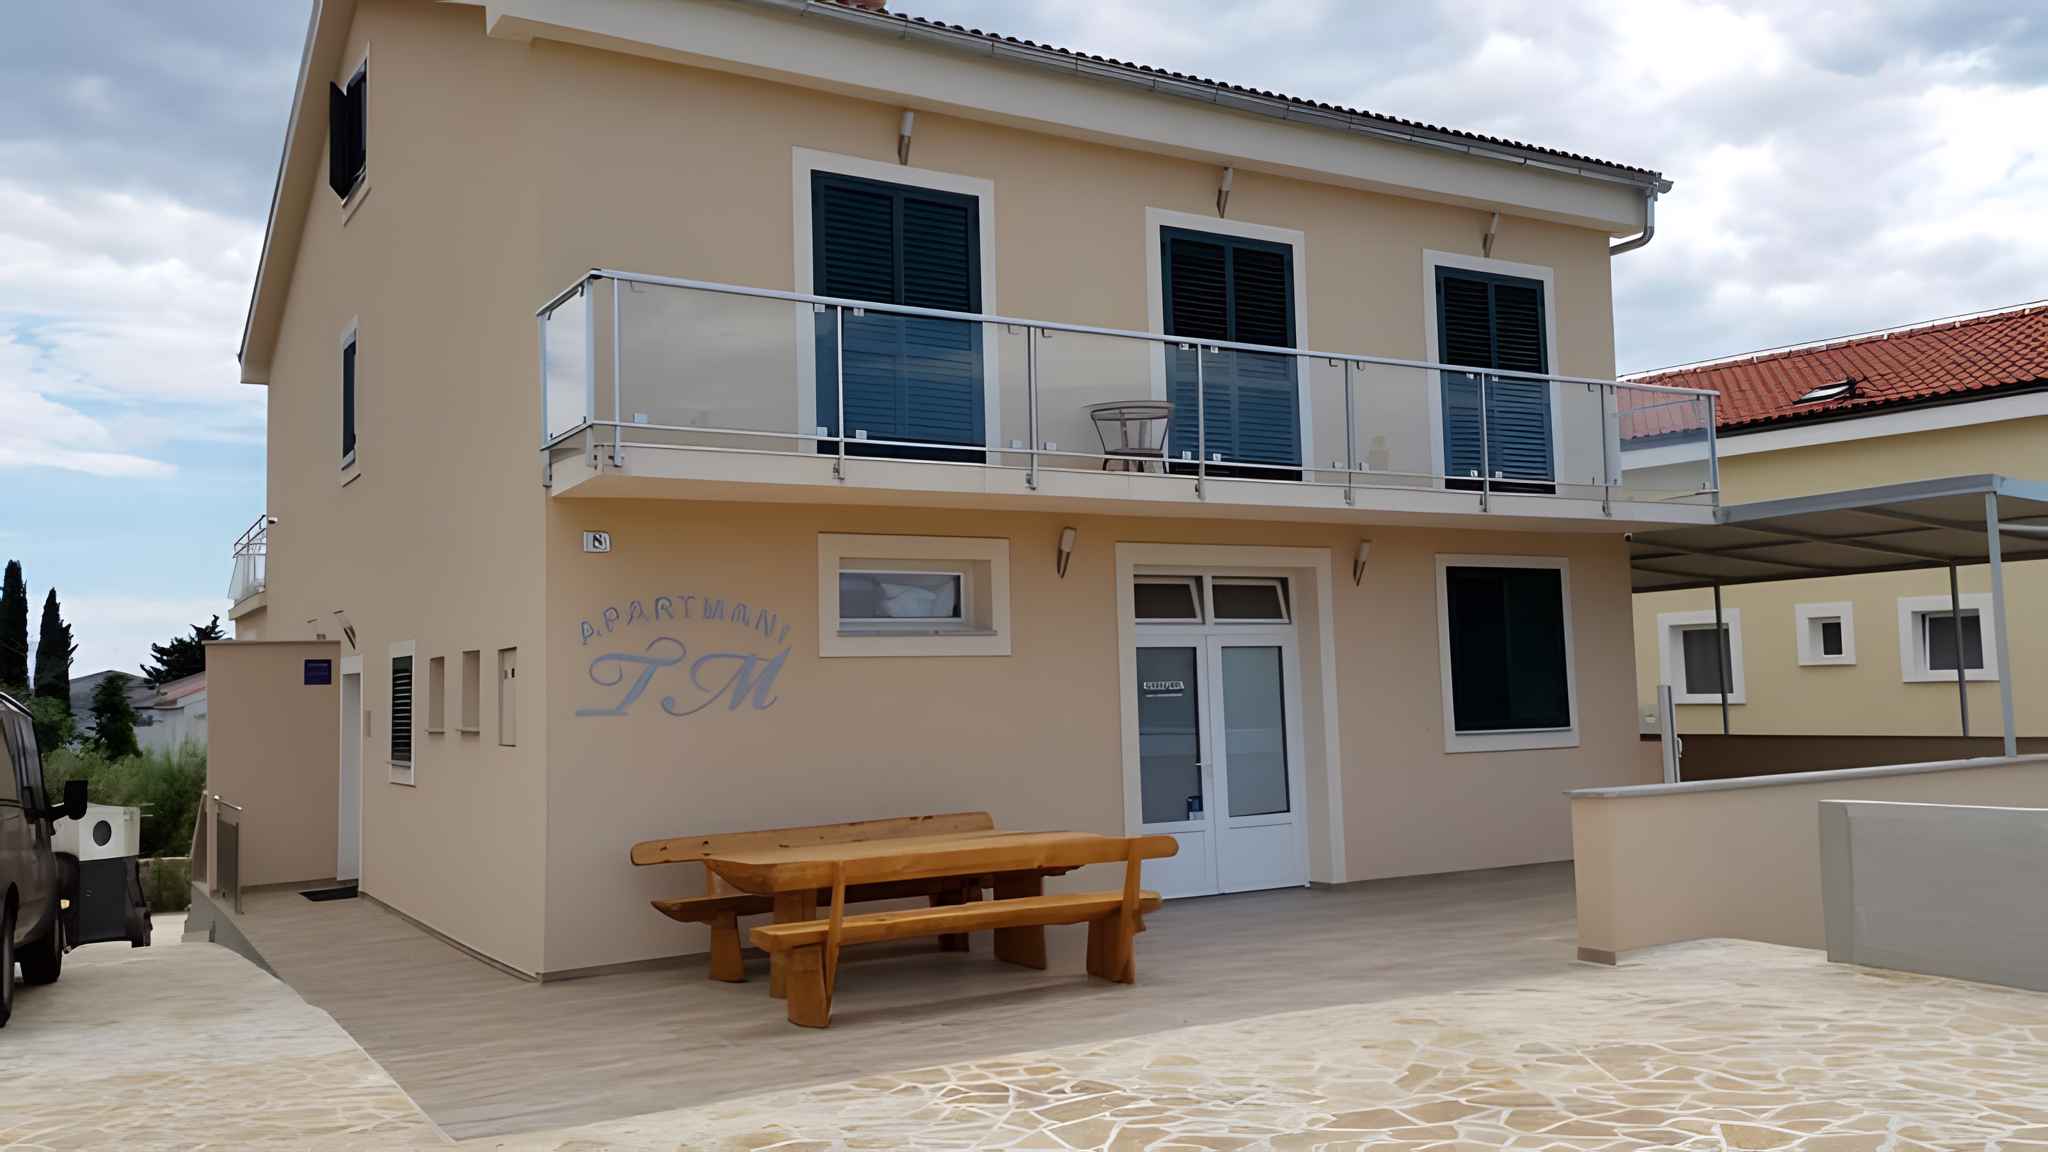 Ferienwohnung mit Pool Nutzung Ferienhaus in Kroatien